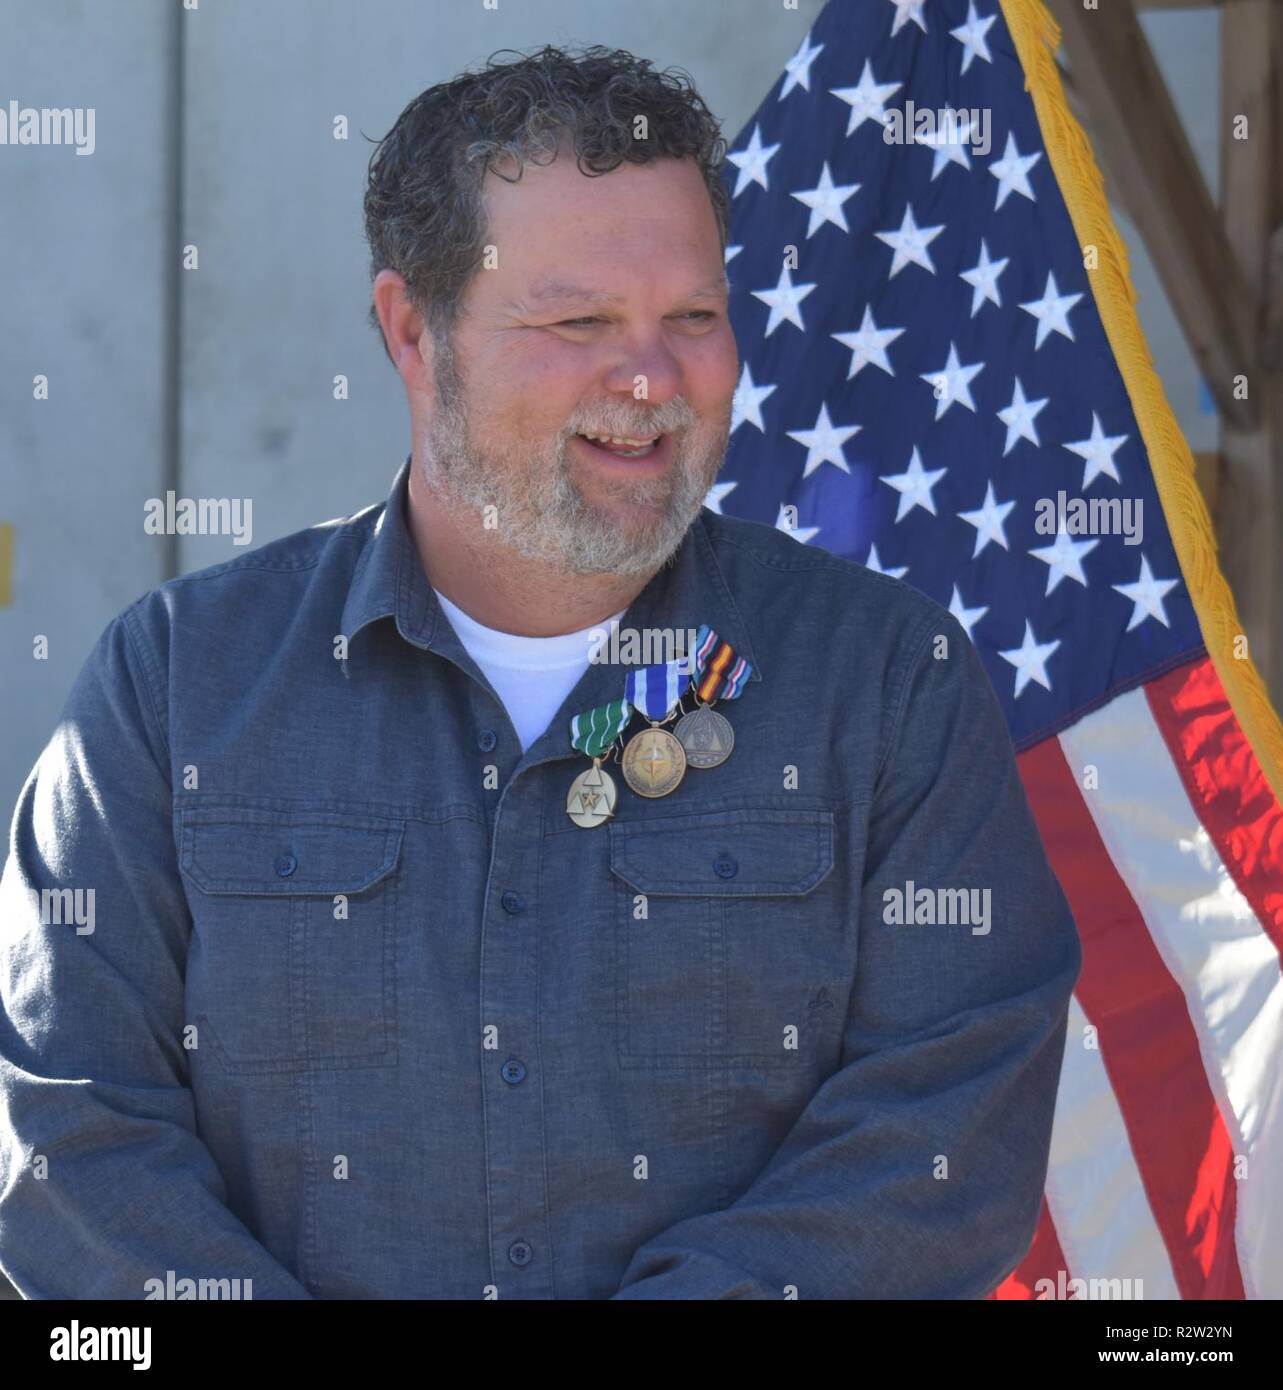 Terry "Hawk" Hawkins orgogliosamente indossa il riconoscimento per il suo servizio di volontariato oltremare a sostegno della missione in Afghanistan. Il suo sorriso contagioso risplendeva, come lui ha fatto, durante tutto il suo servizio disinteressato. Foto Stock